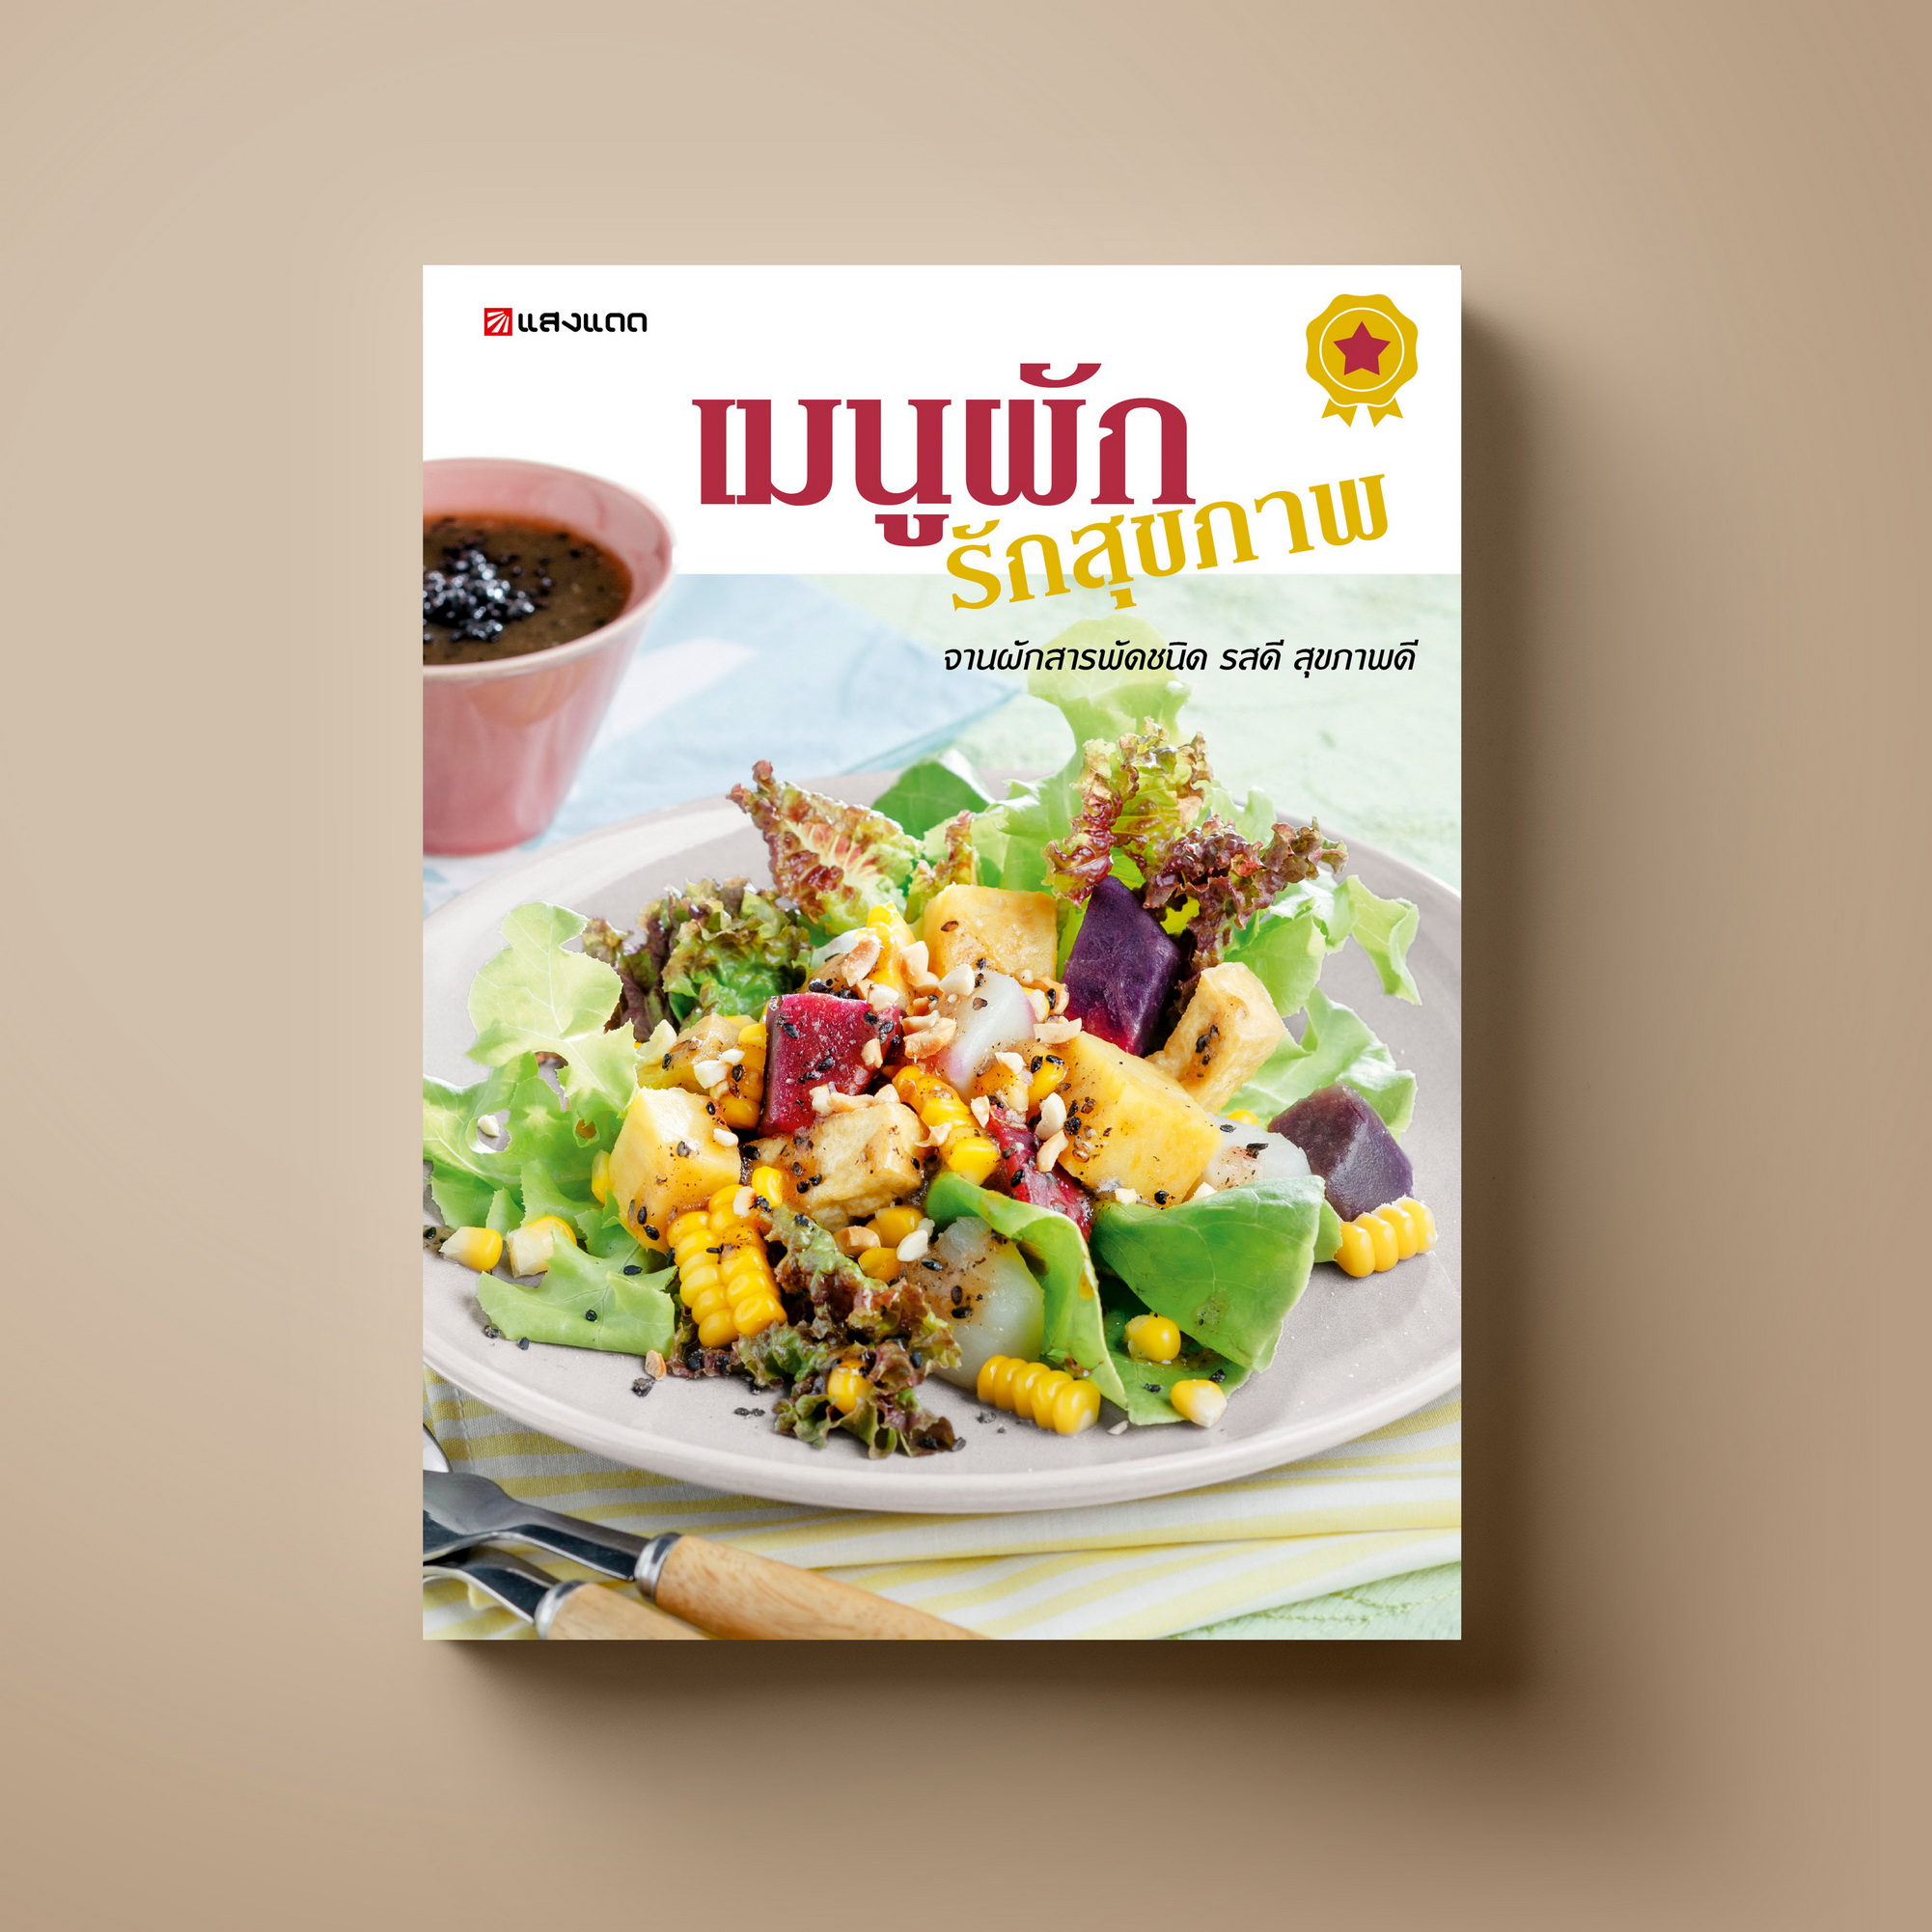 เมนูผัก รักสุขภาพ หนังสือตำราอาหาร สุขภาพ  Sangdad Book สำนักพิมพ์แสงแดด